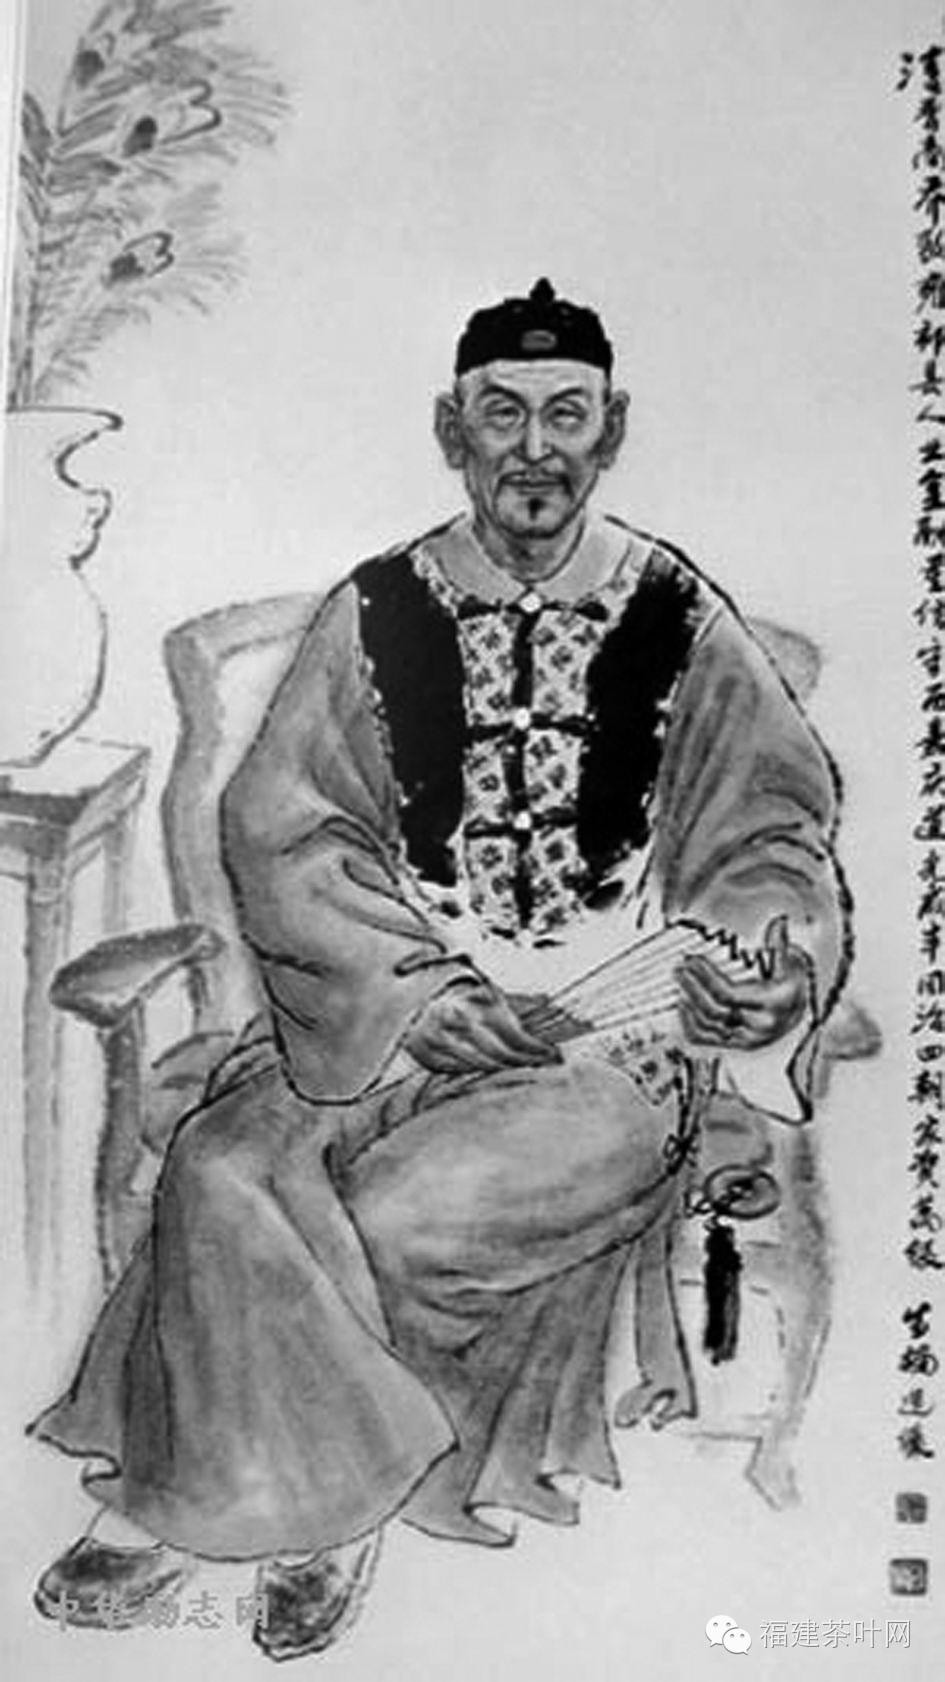 乔致庸徐润(1838—1911,又名以璋,字润立,号雨之,别号愚斋,香山县